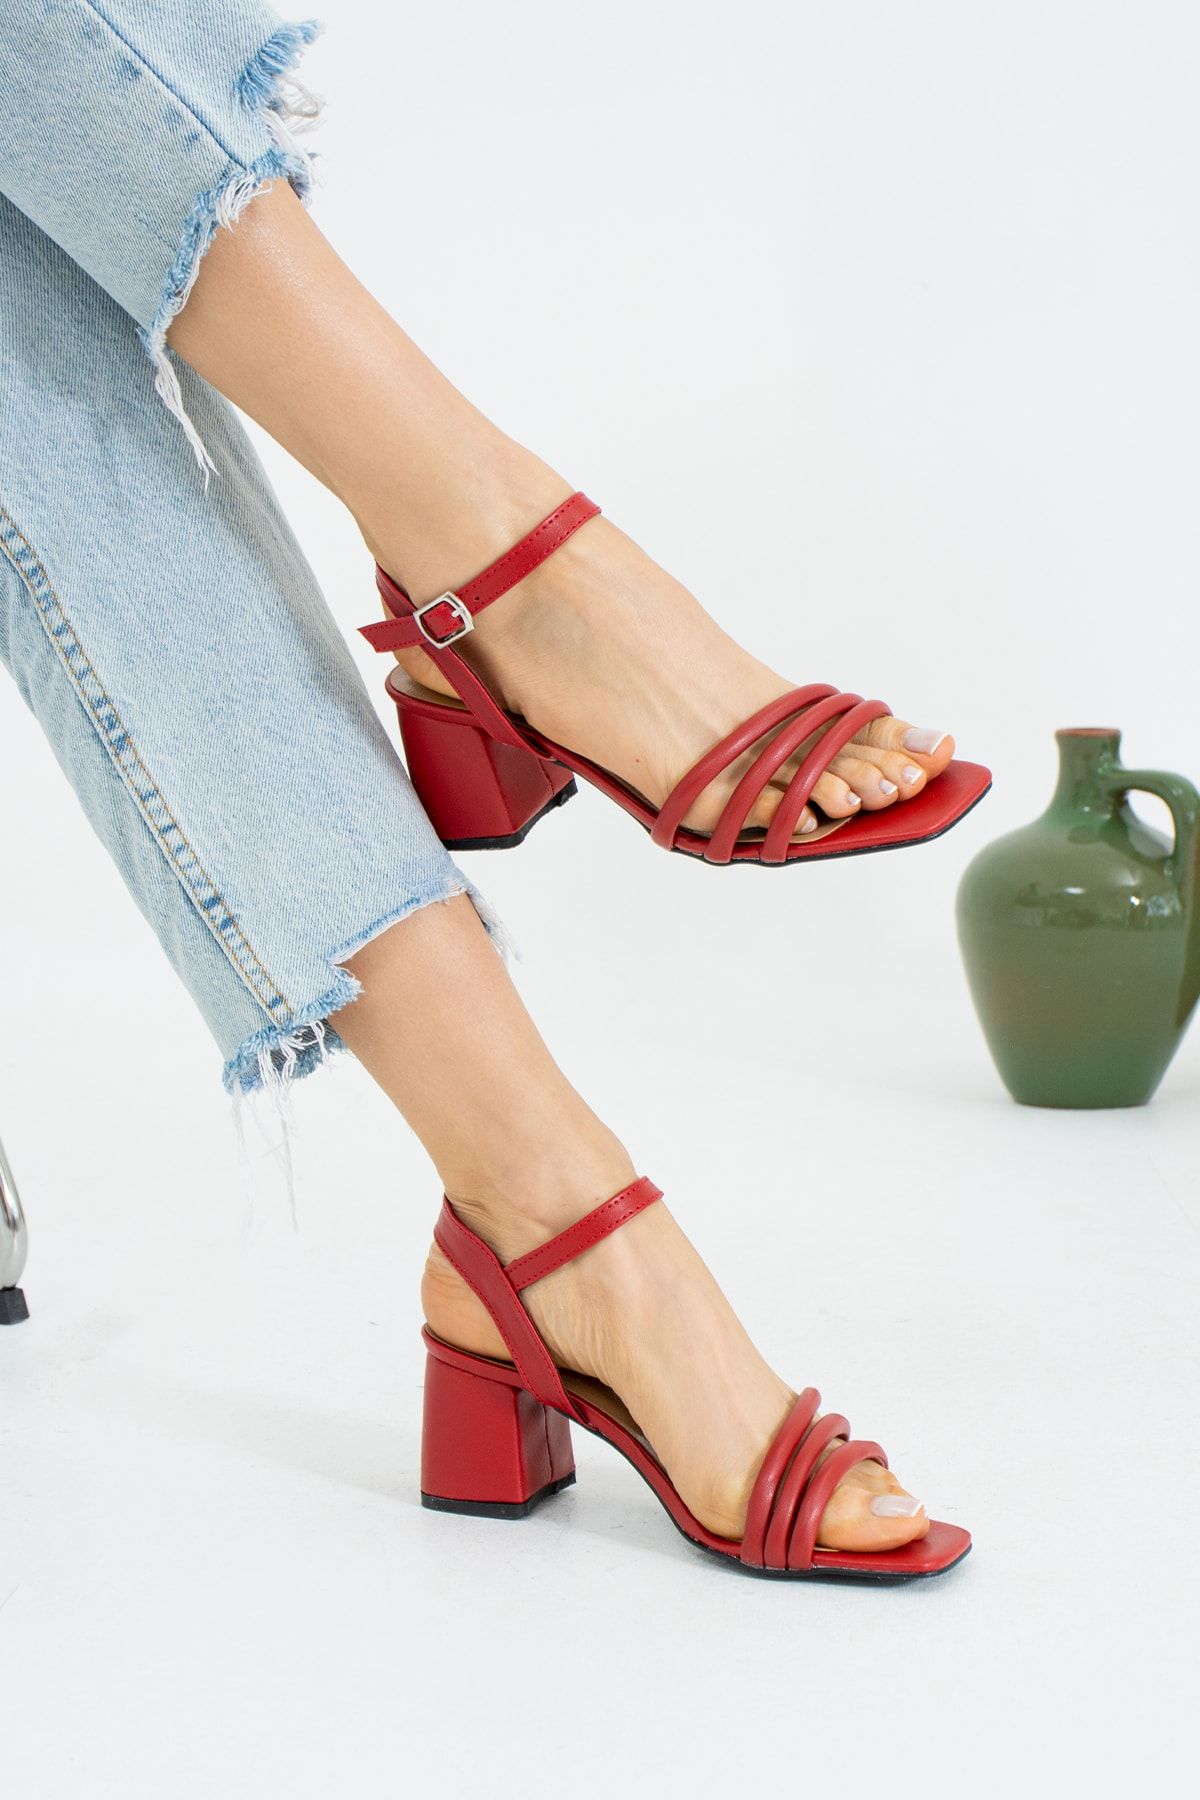 İnan Ayakkabı Kadın Üç Bant Ve Bilekten Kemer Detaylı Topuklu Ayakkabı Kırmızı Renk 6 Cm Topuk